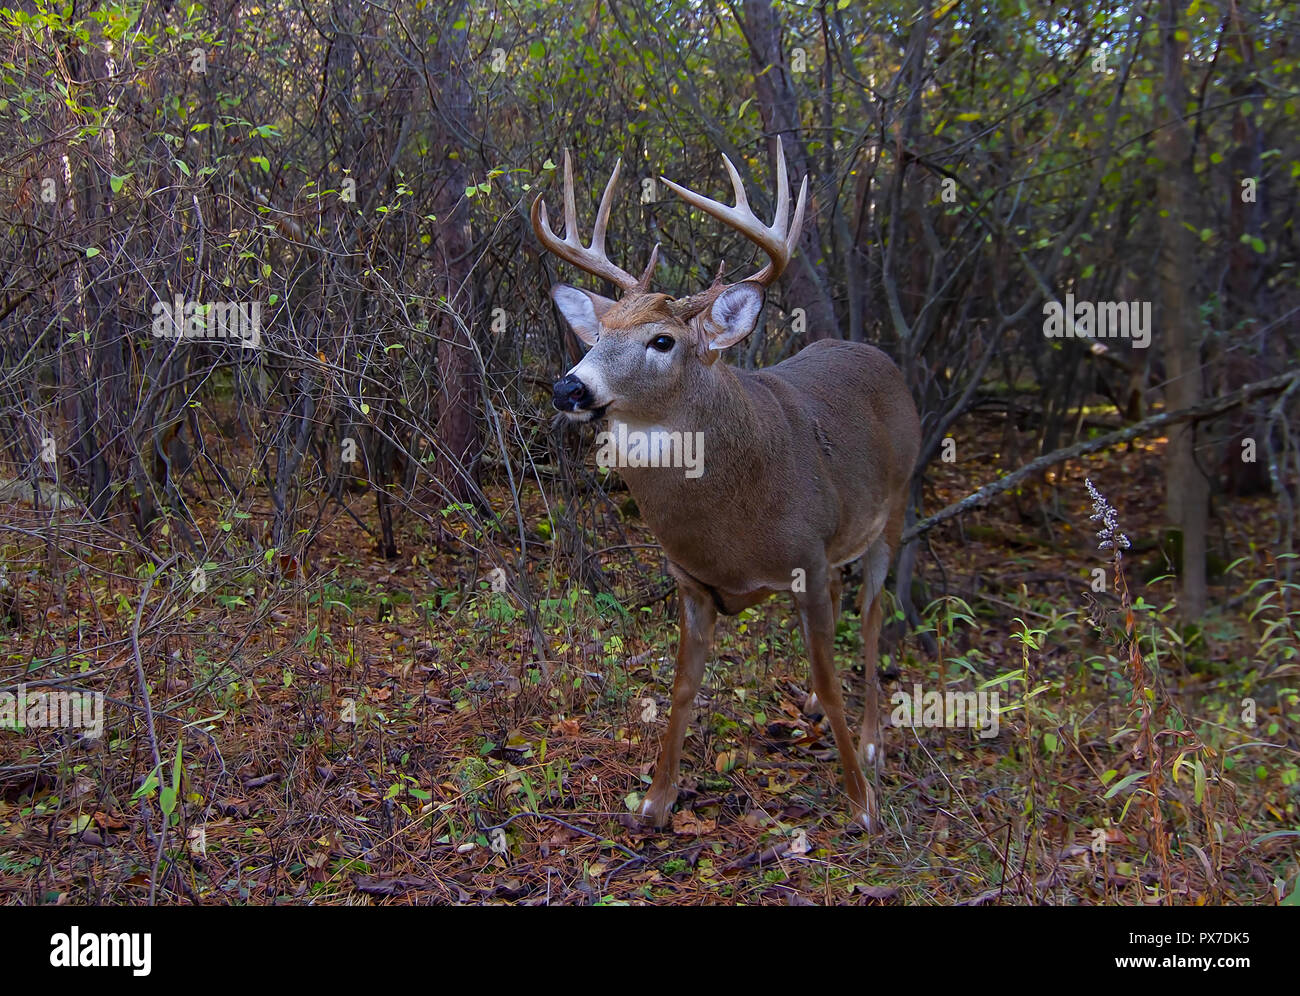 White-tailed deer buck avec un énorme cou debout en alerte à la recherche d'un partenaire au cours de l'ornière dans la lumière de l'automne tôt le matin à Ottawa, Canada Banque D'Images